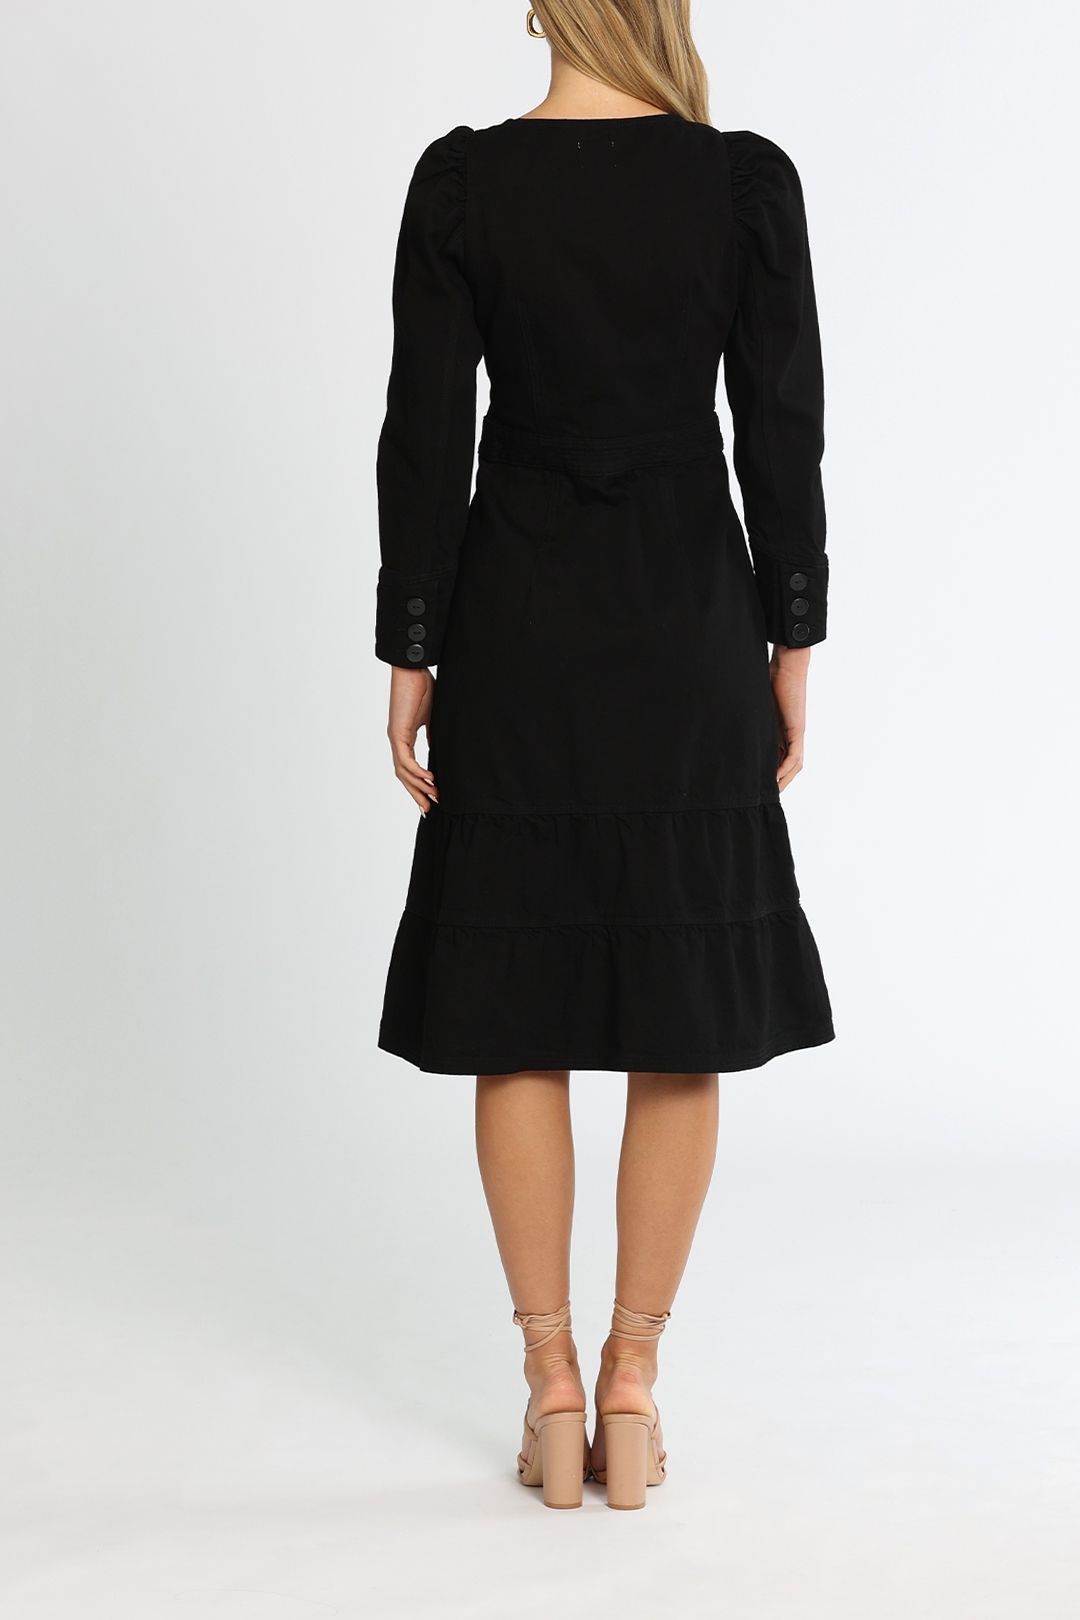 Morrison Max Denim Dress Black Flared Skirt